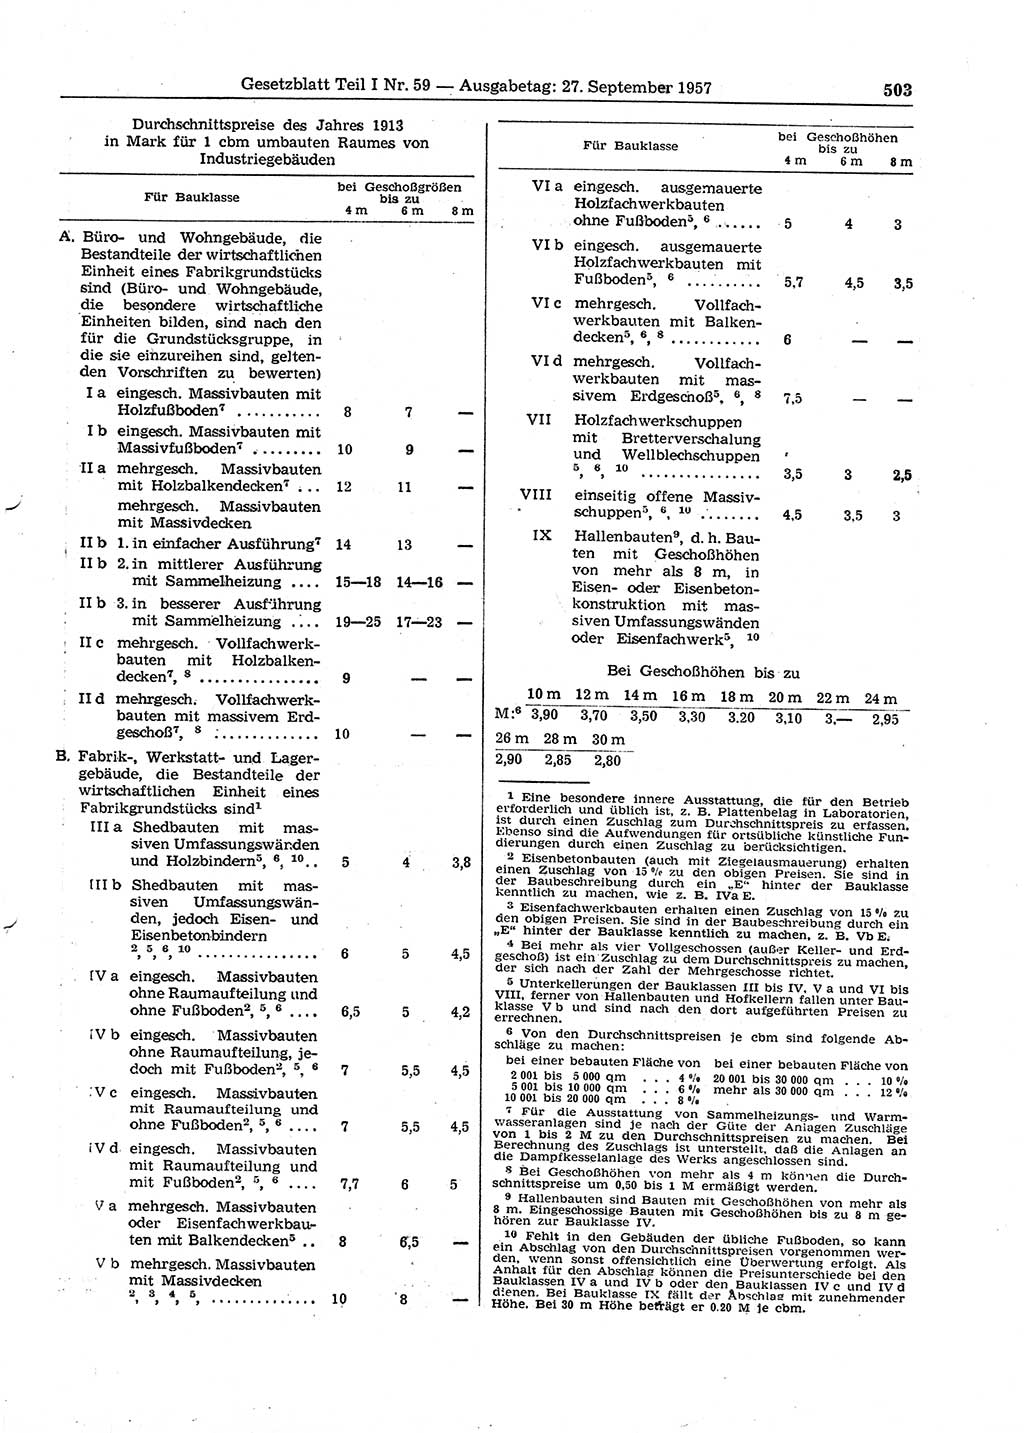 Gesetzblatt (GBl.) der Deutschen Demokratischen Republik (DDR) Teil Ⅰ 1957, Seite 503 (GBl. DDR Ⅰ 1957, S. 503)